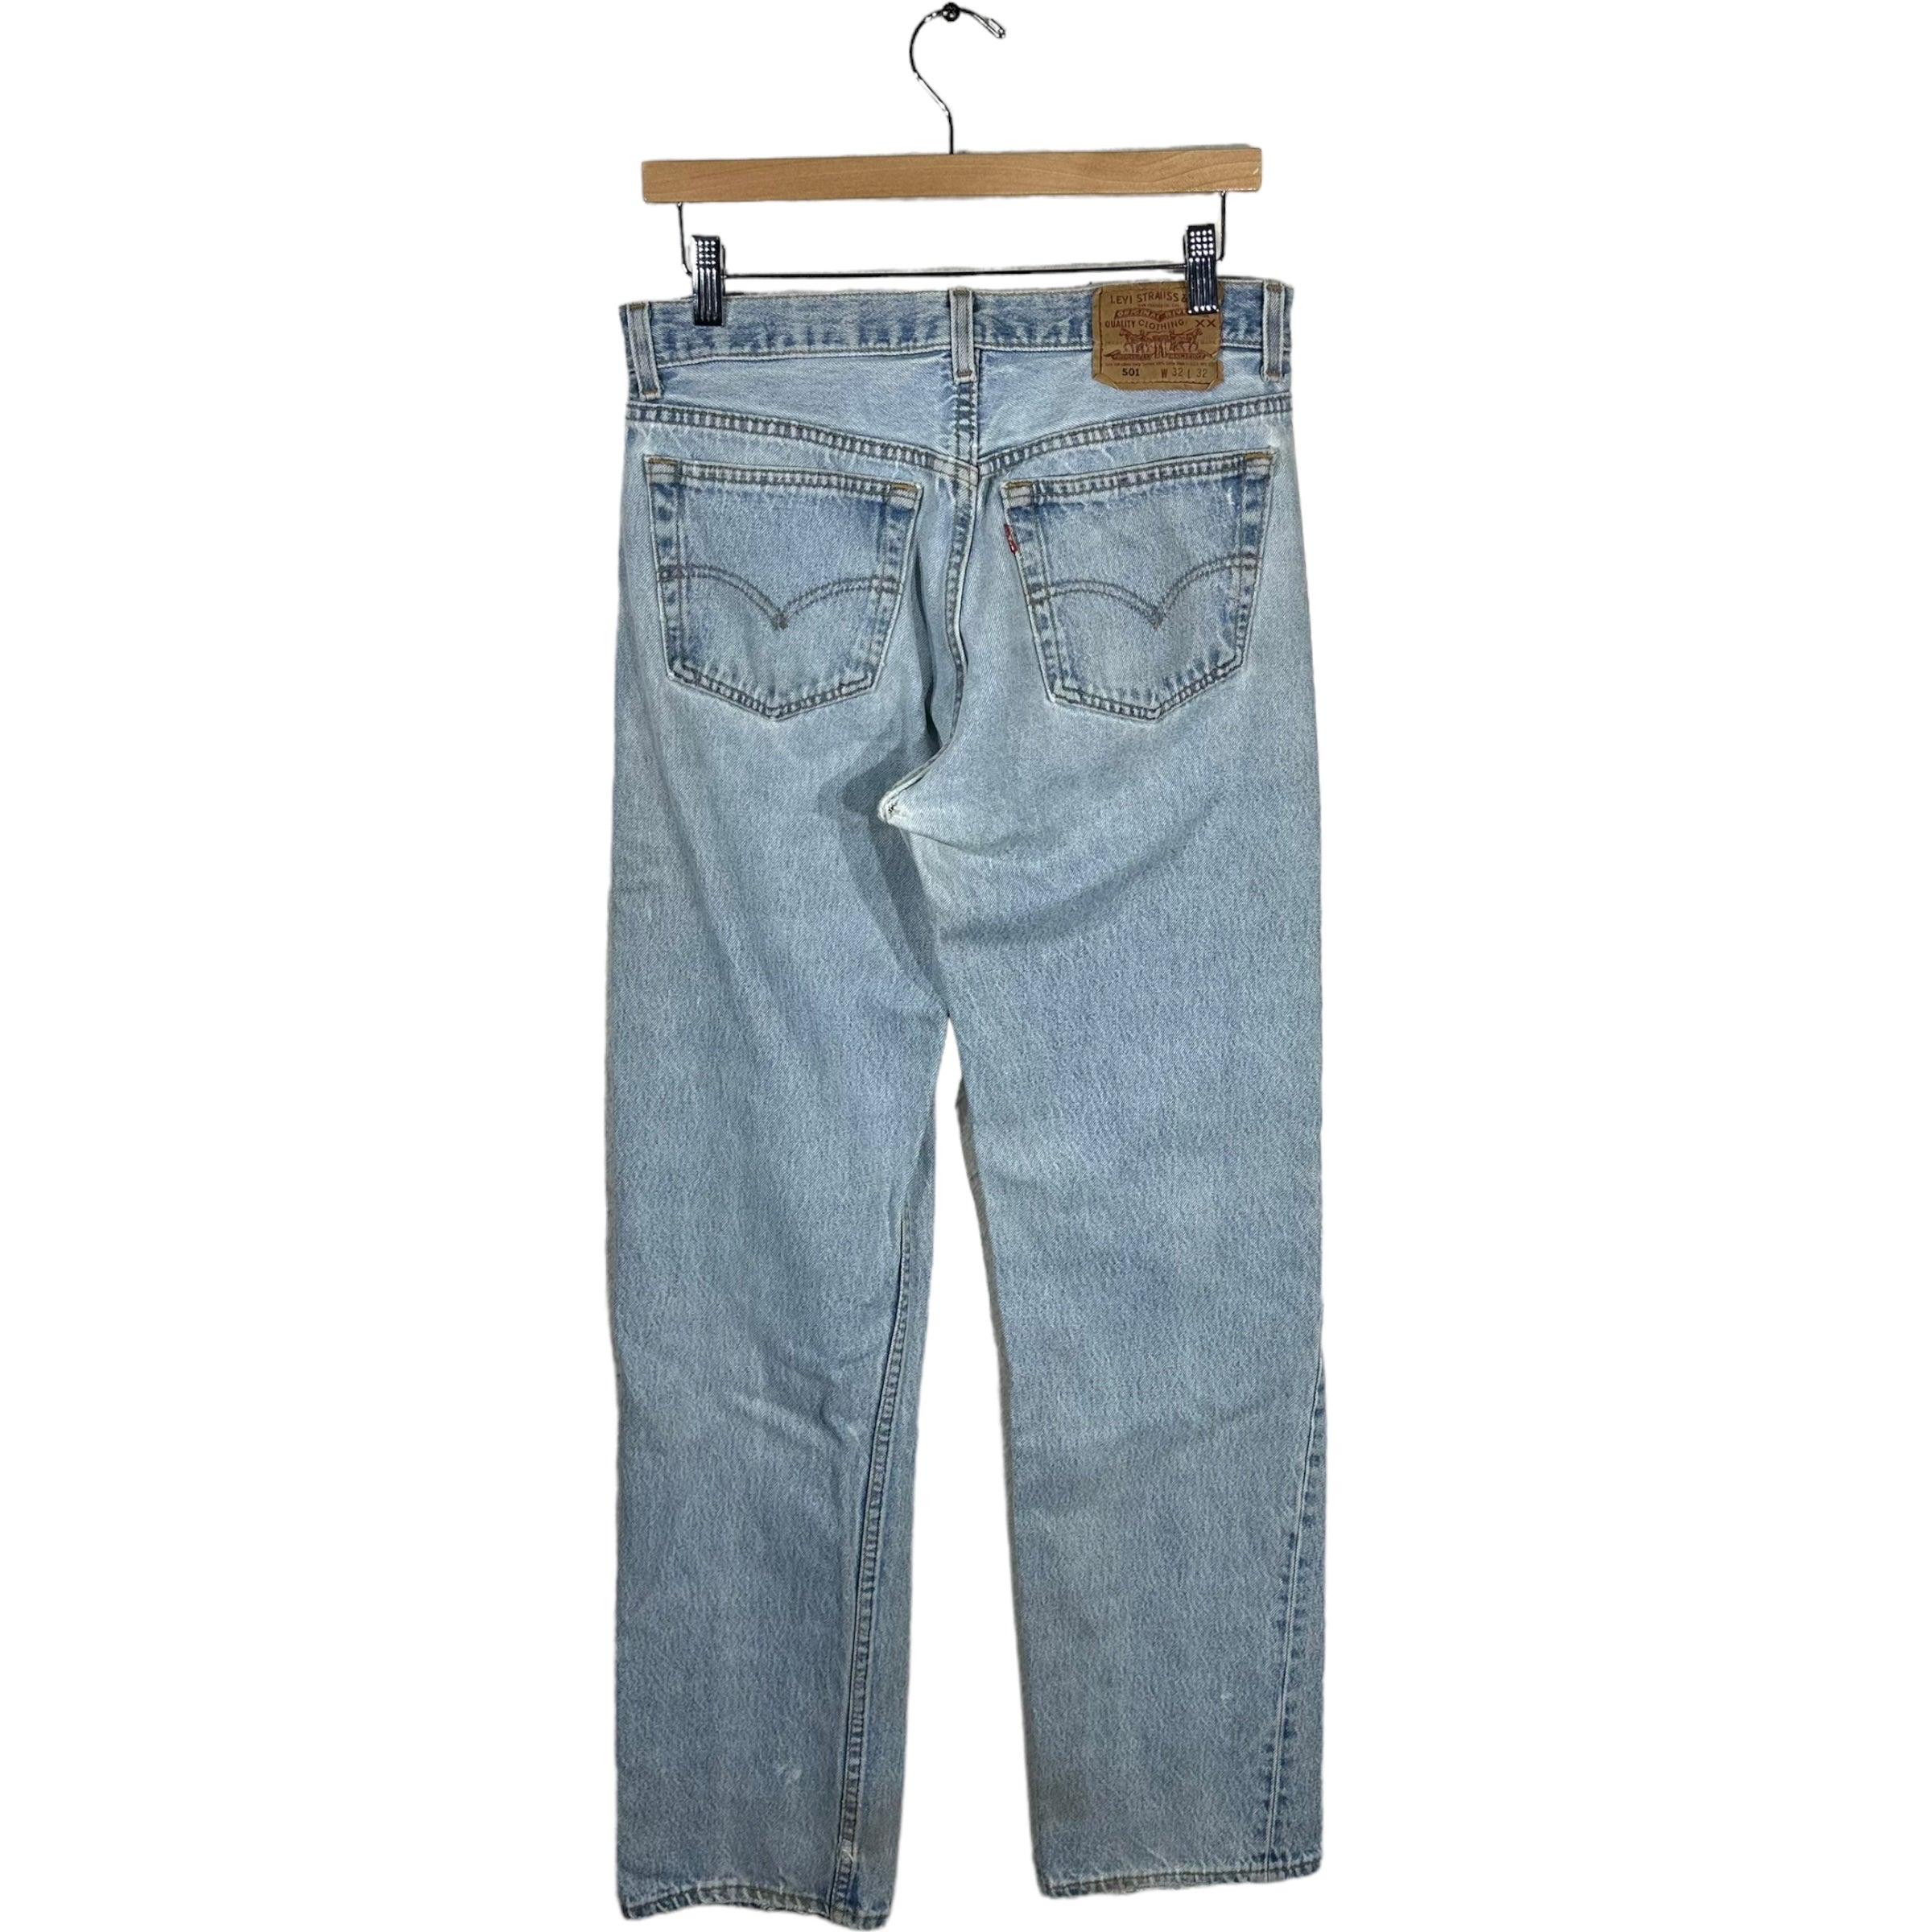 Vintage Levis 501 Jeans